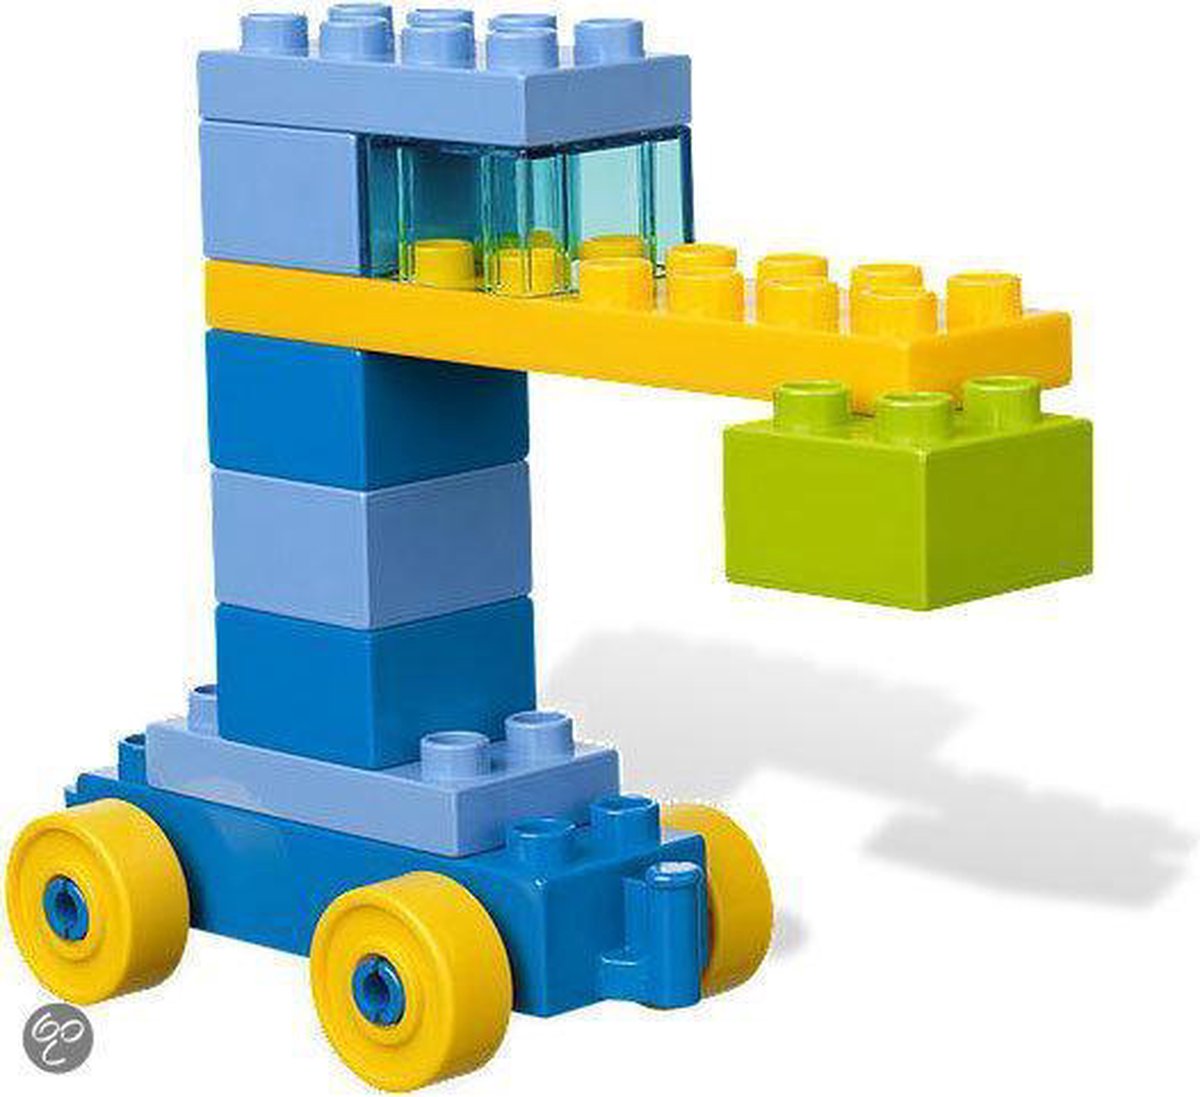 LEGO Duplo Mijn Allereerste Bouwset - 4631 | bol.com